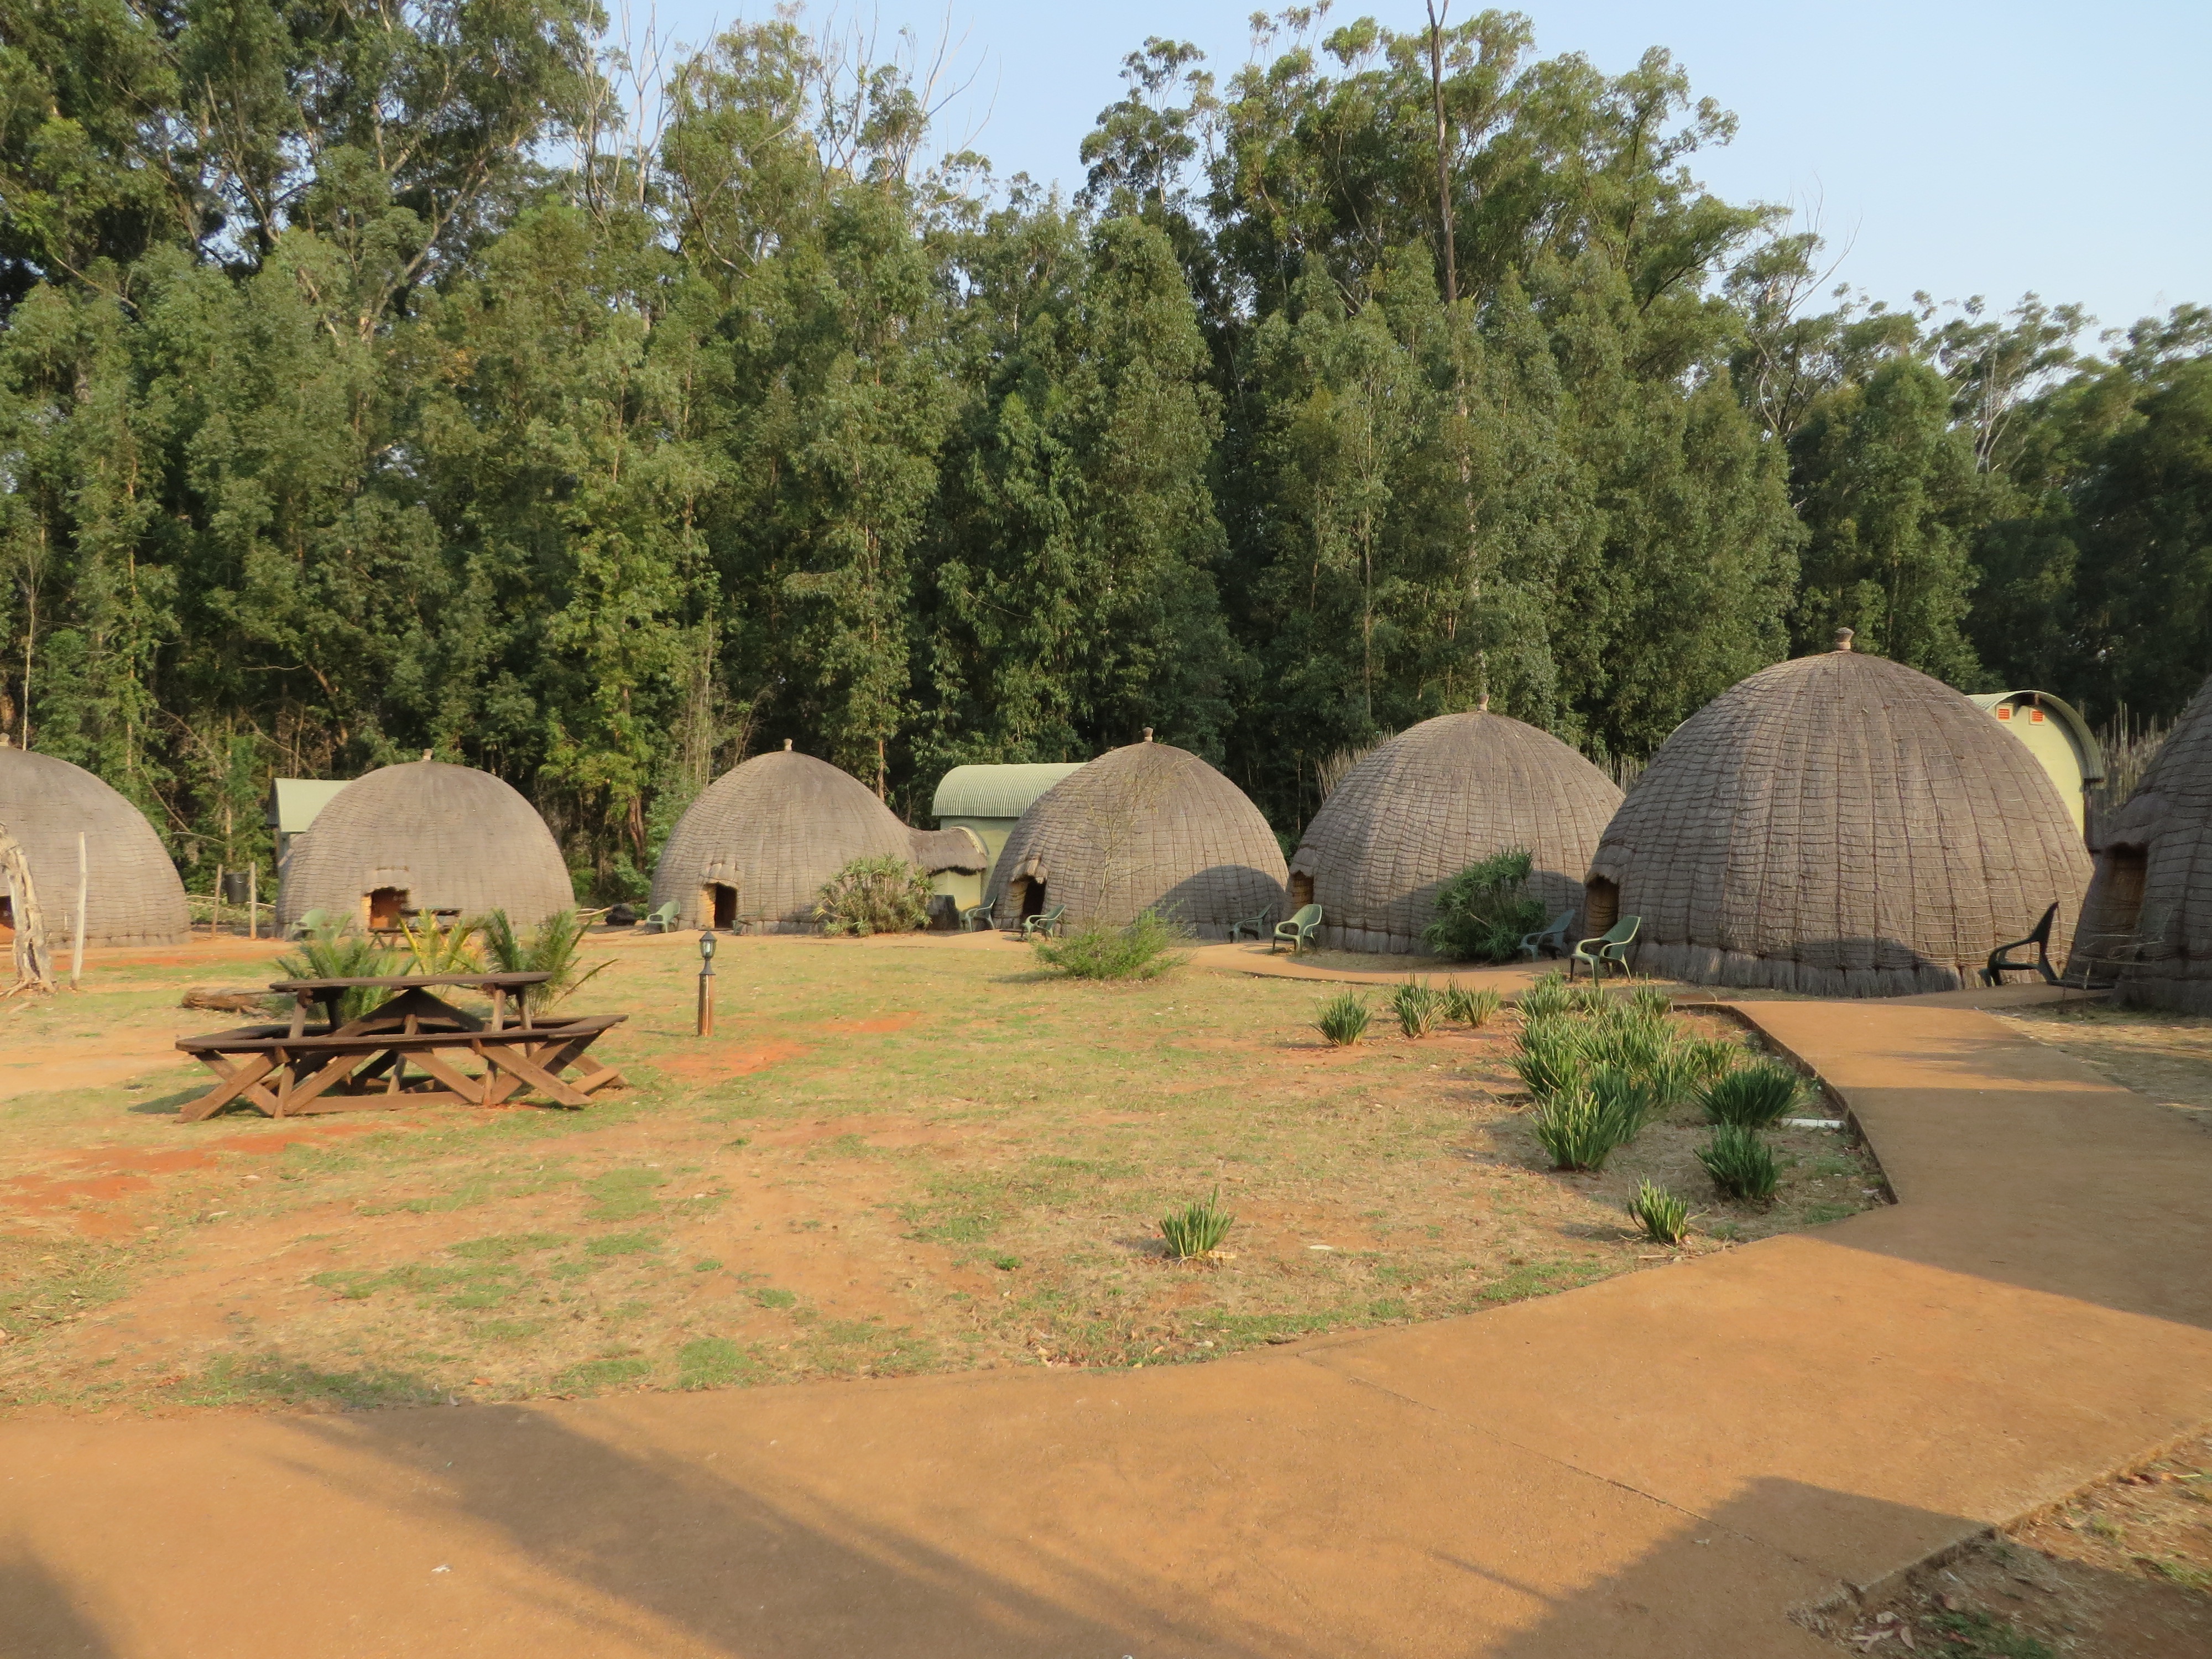 Zulu huts at Mkhaya.